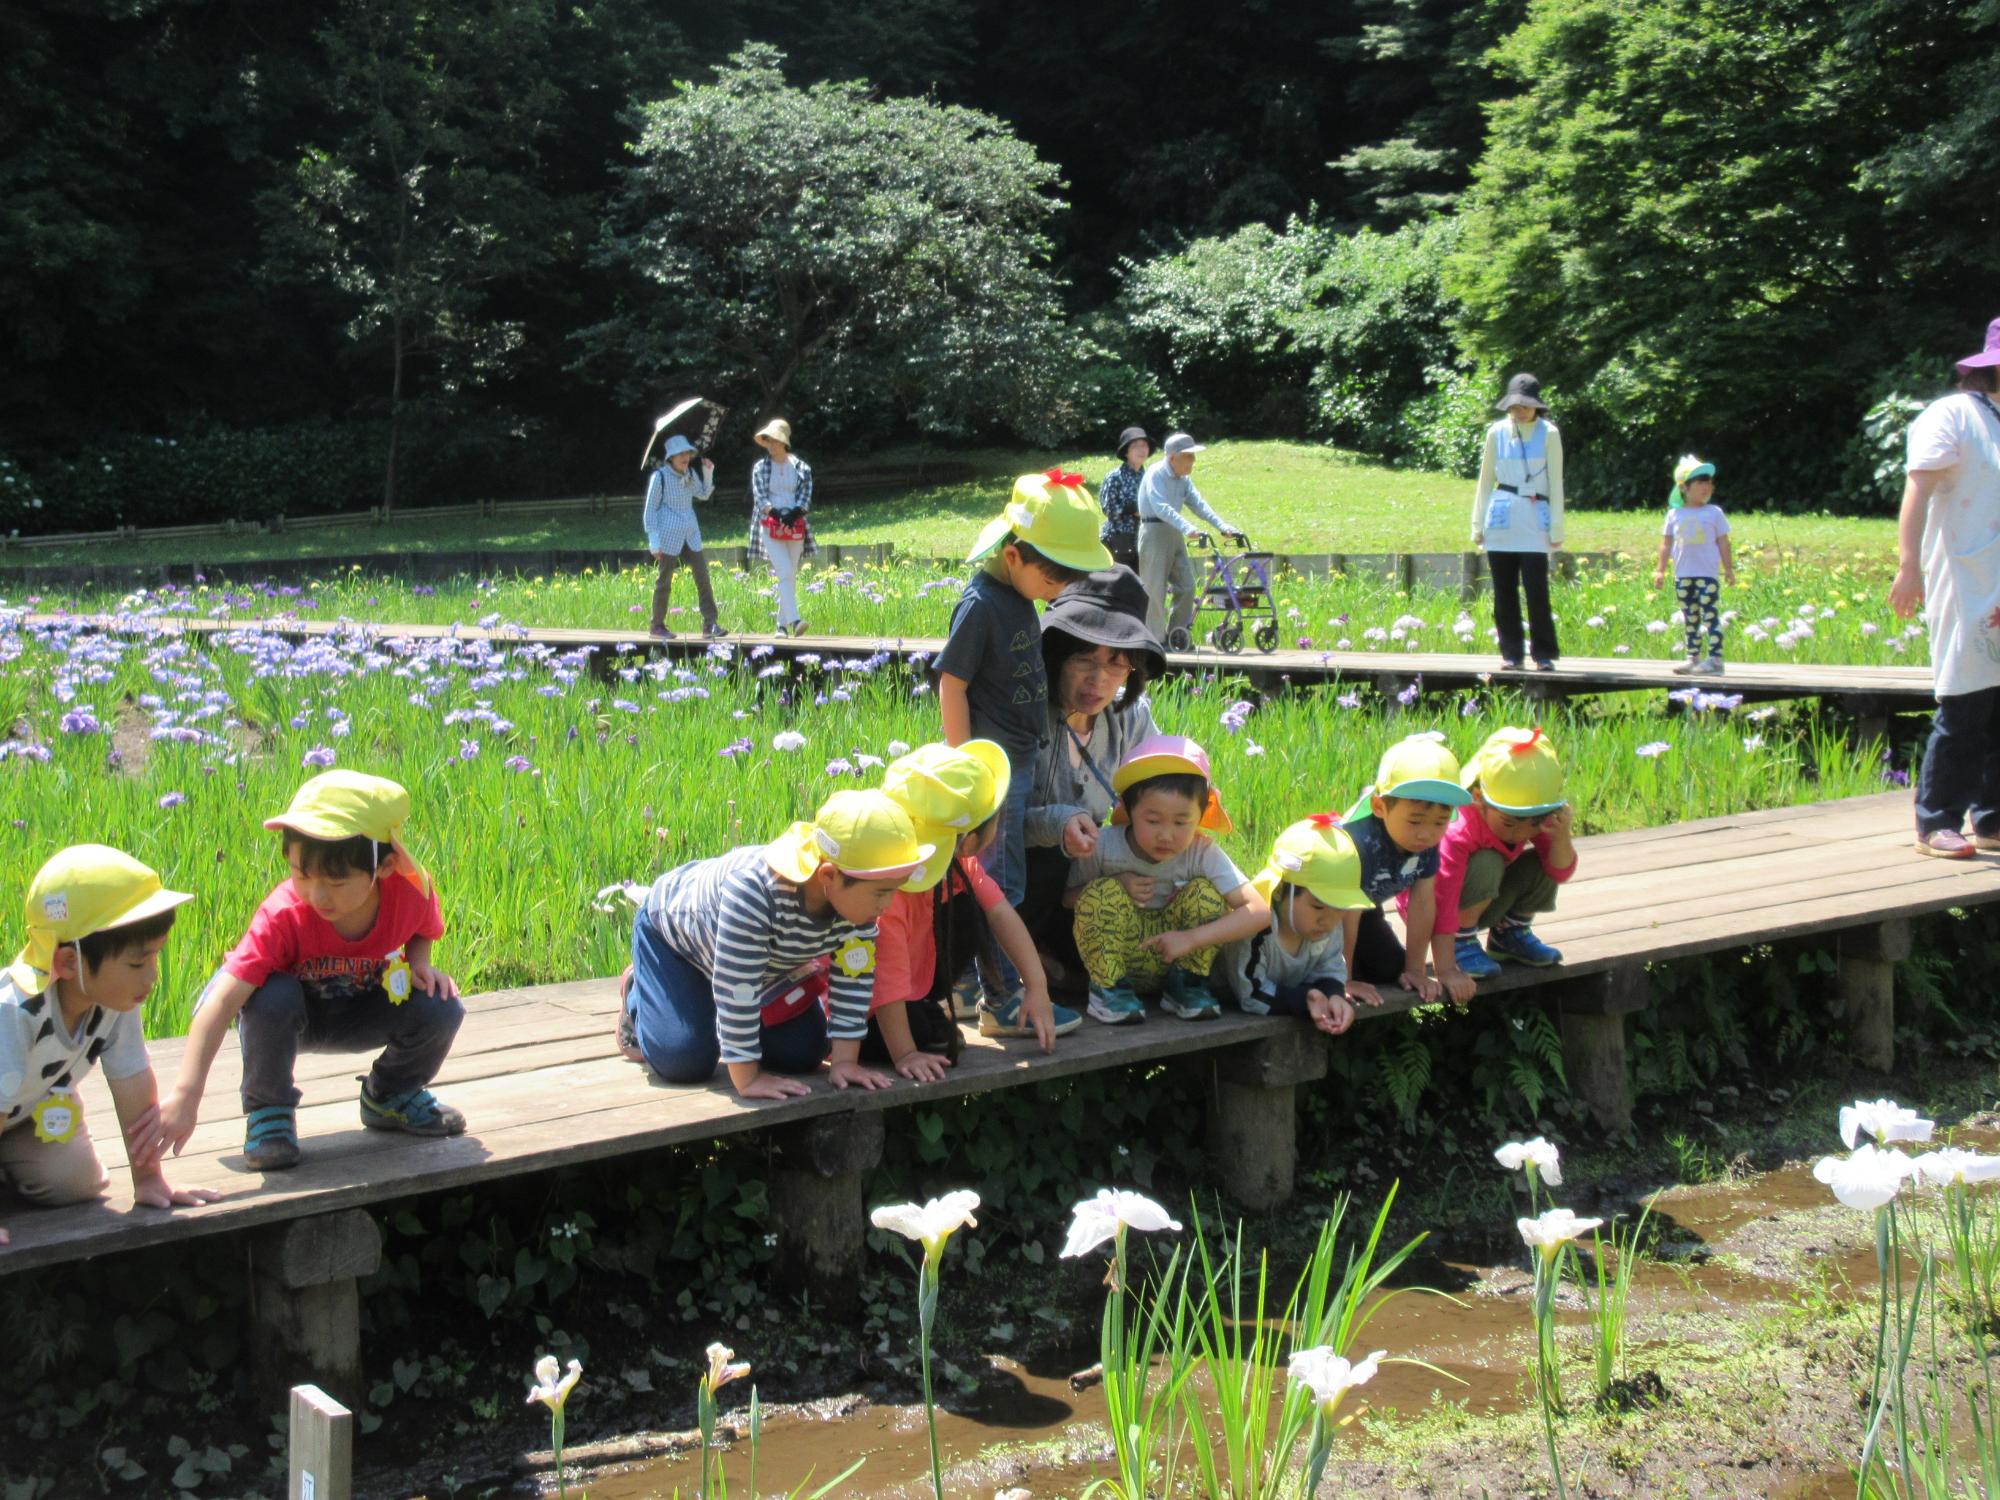 菖蒲田にかかった橋の上から園児たちが菖蒲を見ている写真